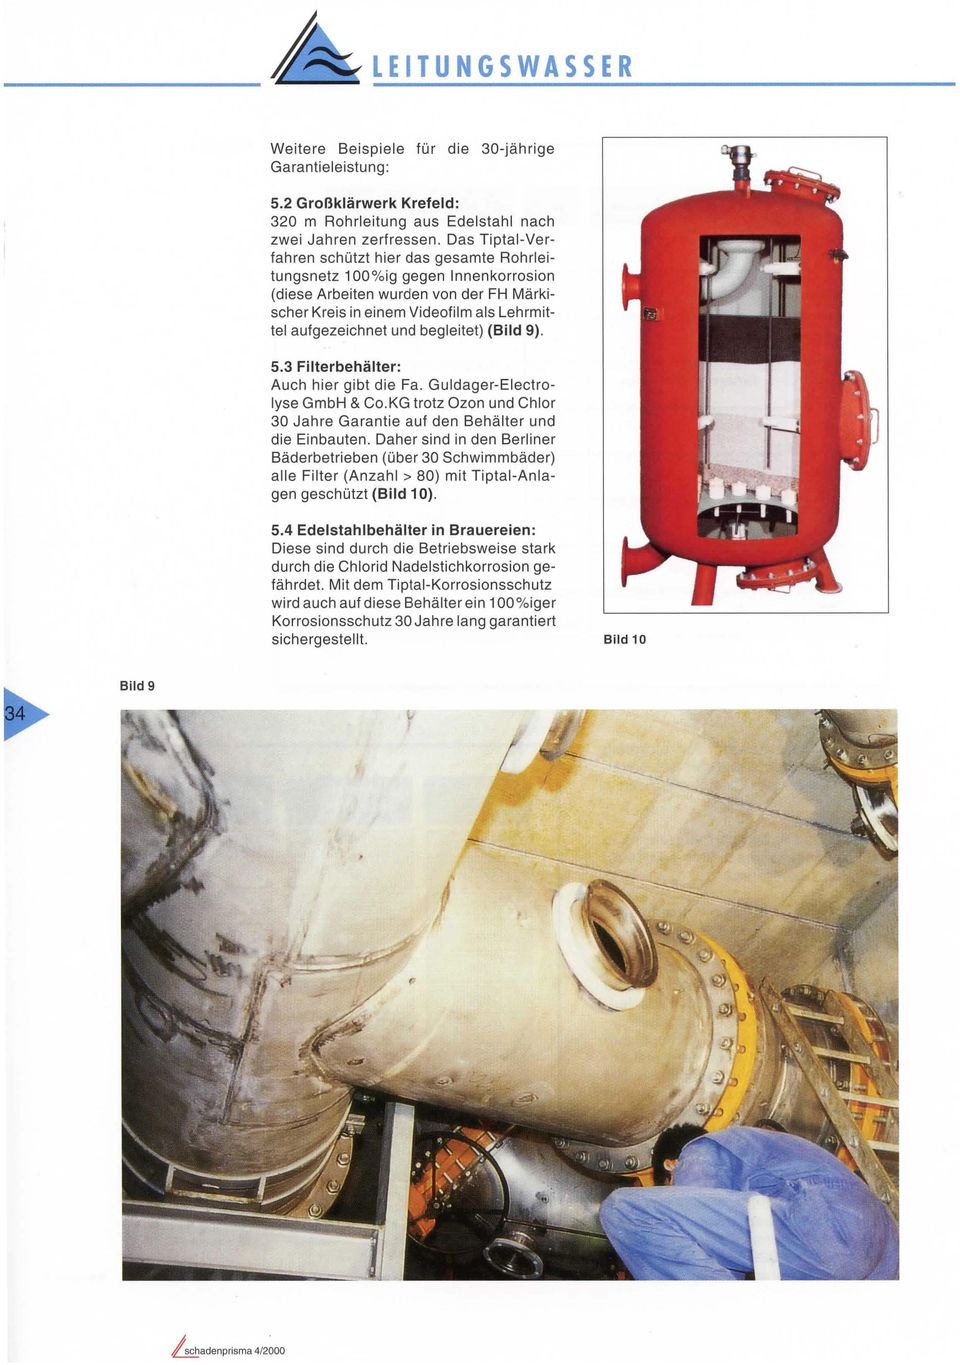 begleitet) (Bild 9). 5.3 Filterbehälter: Auch hier gibt die Fa. Guldager-Electro yse GmbH & CO.KG trotz Ozon und Chlor 30 Jahre Garantie auf den Behälter und die Einbauten.